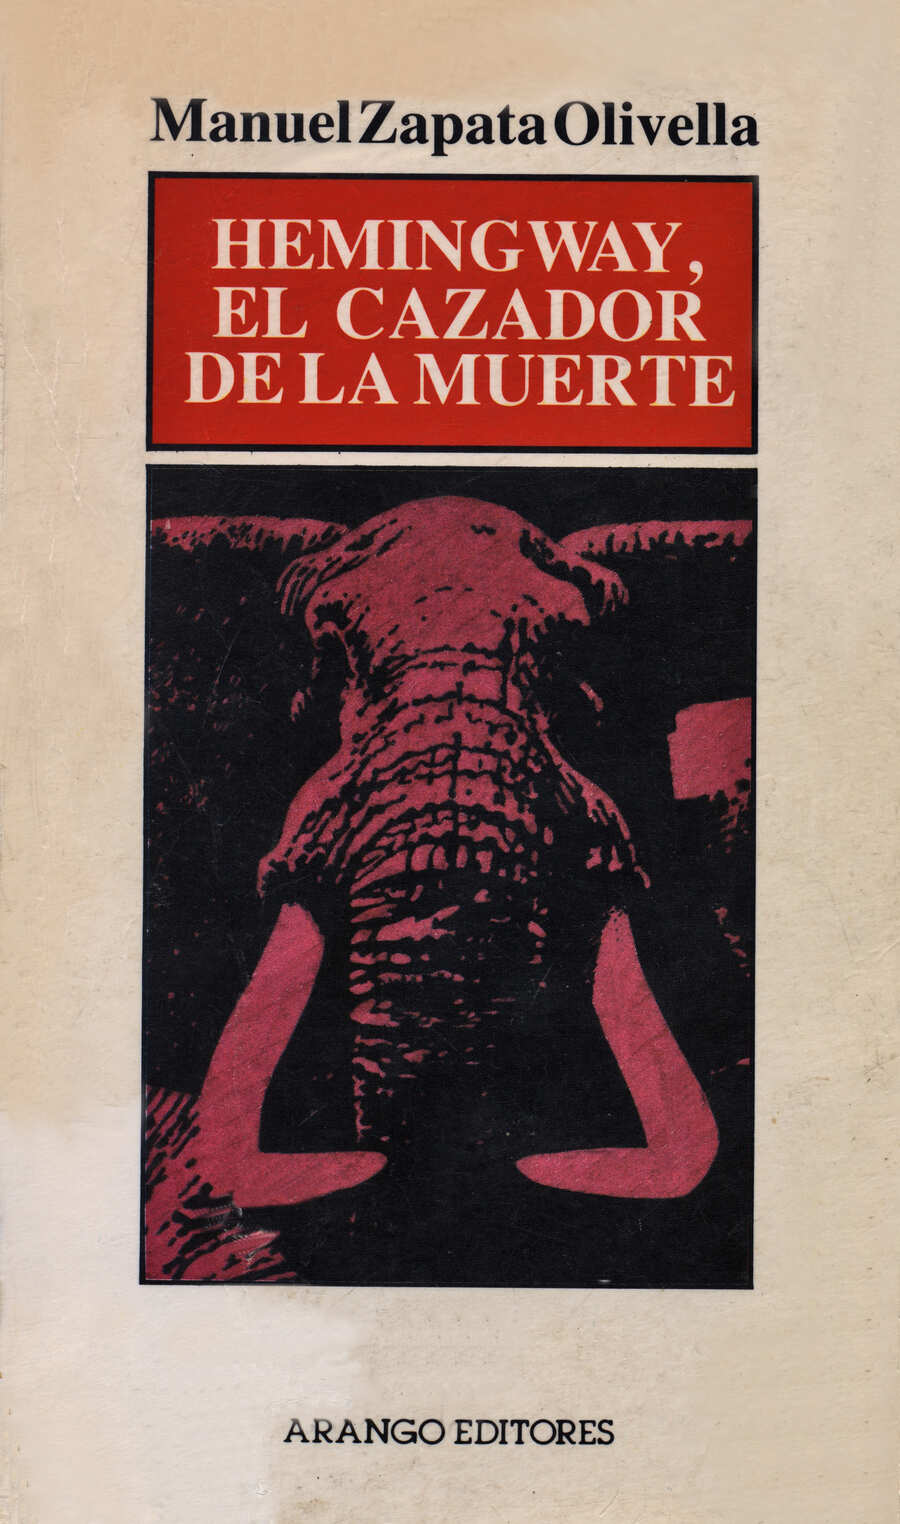 Cubierta del libro Hemingway, el cazador de la muerte, primera edición de Arango Editores. 